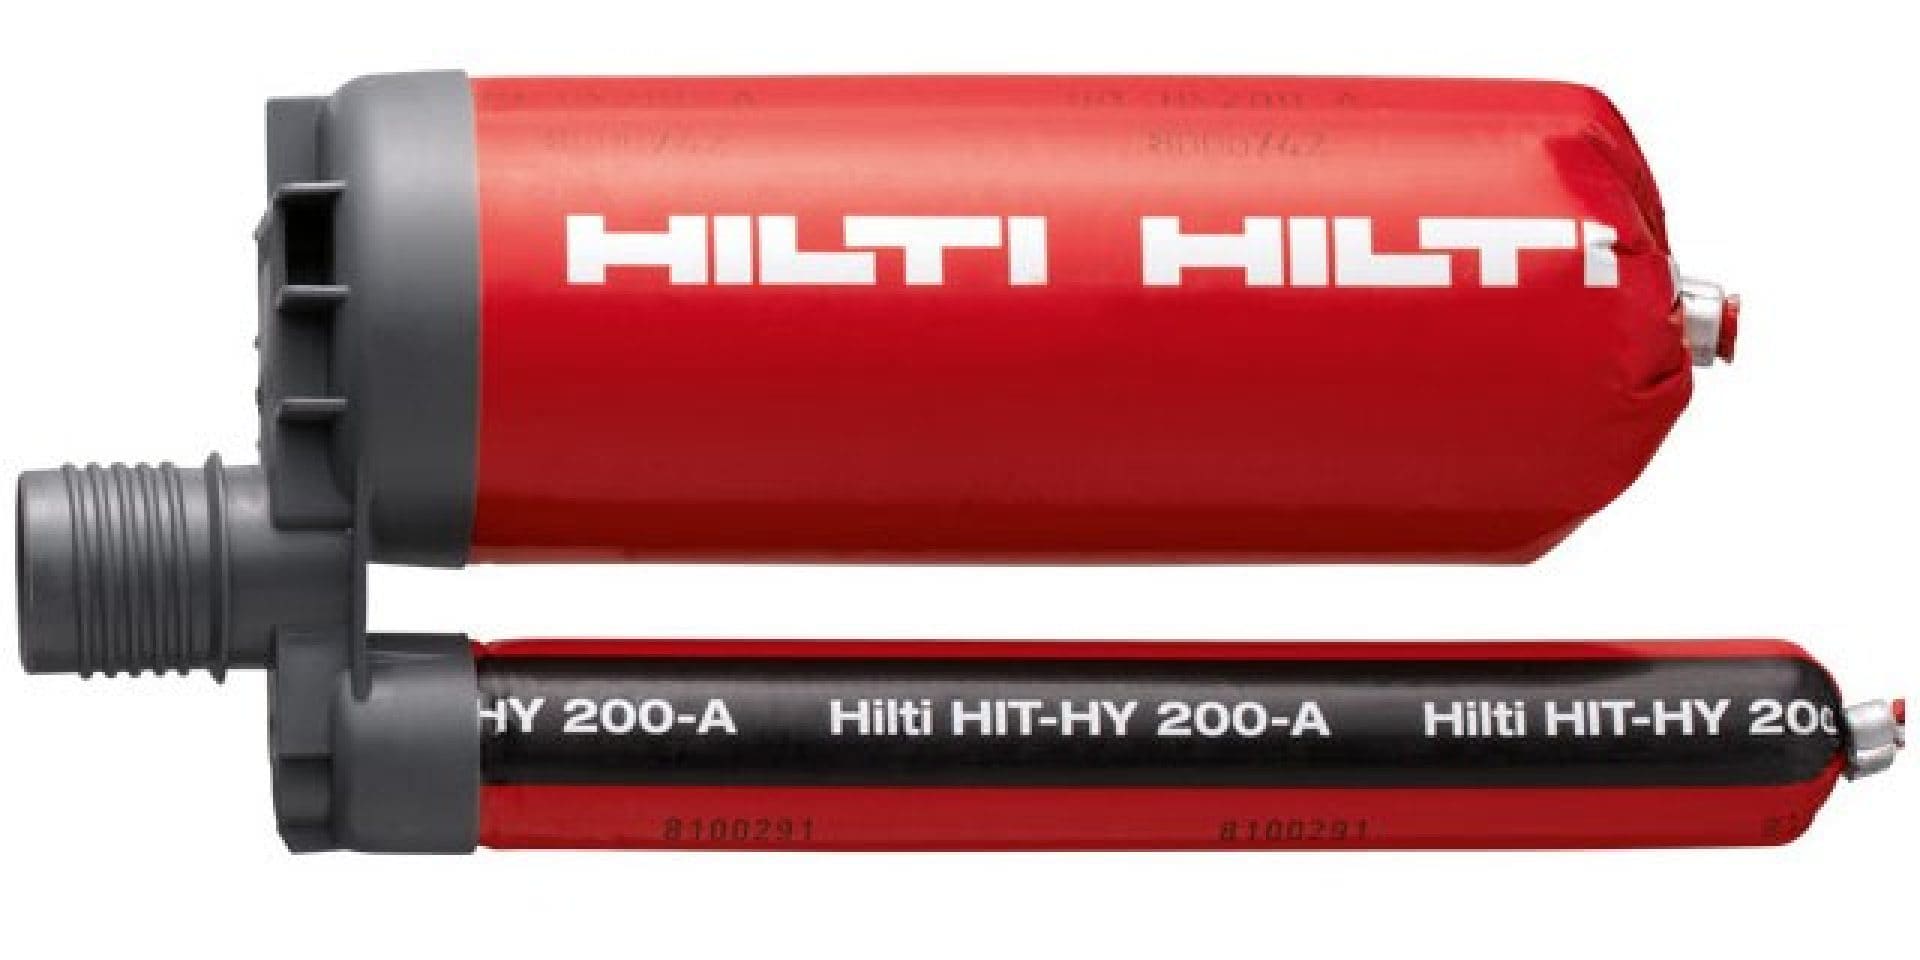 HIT-HY 200-A 高性能ハイブリッド接着系注入方式アンカーは、SafeSet工法の一部として、あと施工アンカーとあと施工鉄筋の定着にお使いいただける製品です。